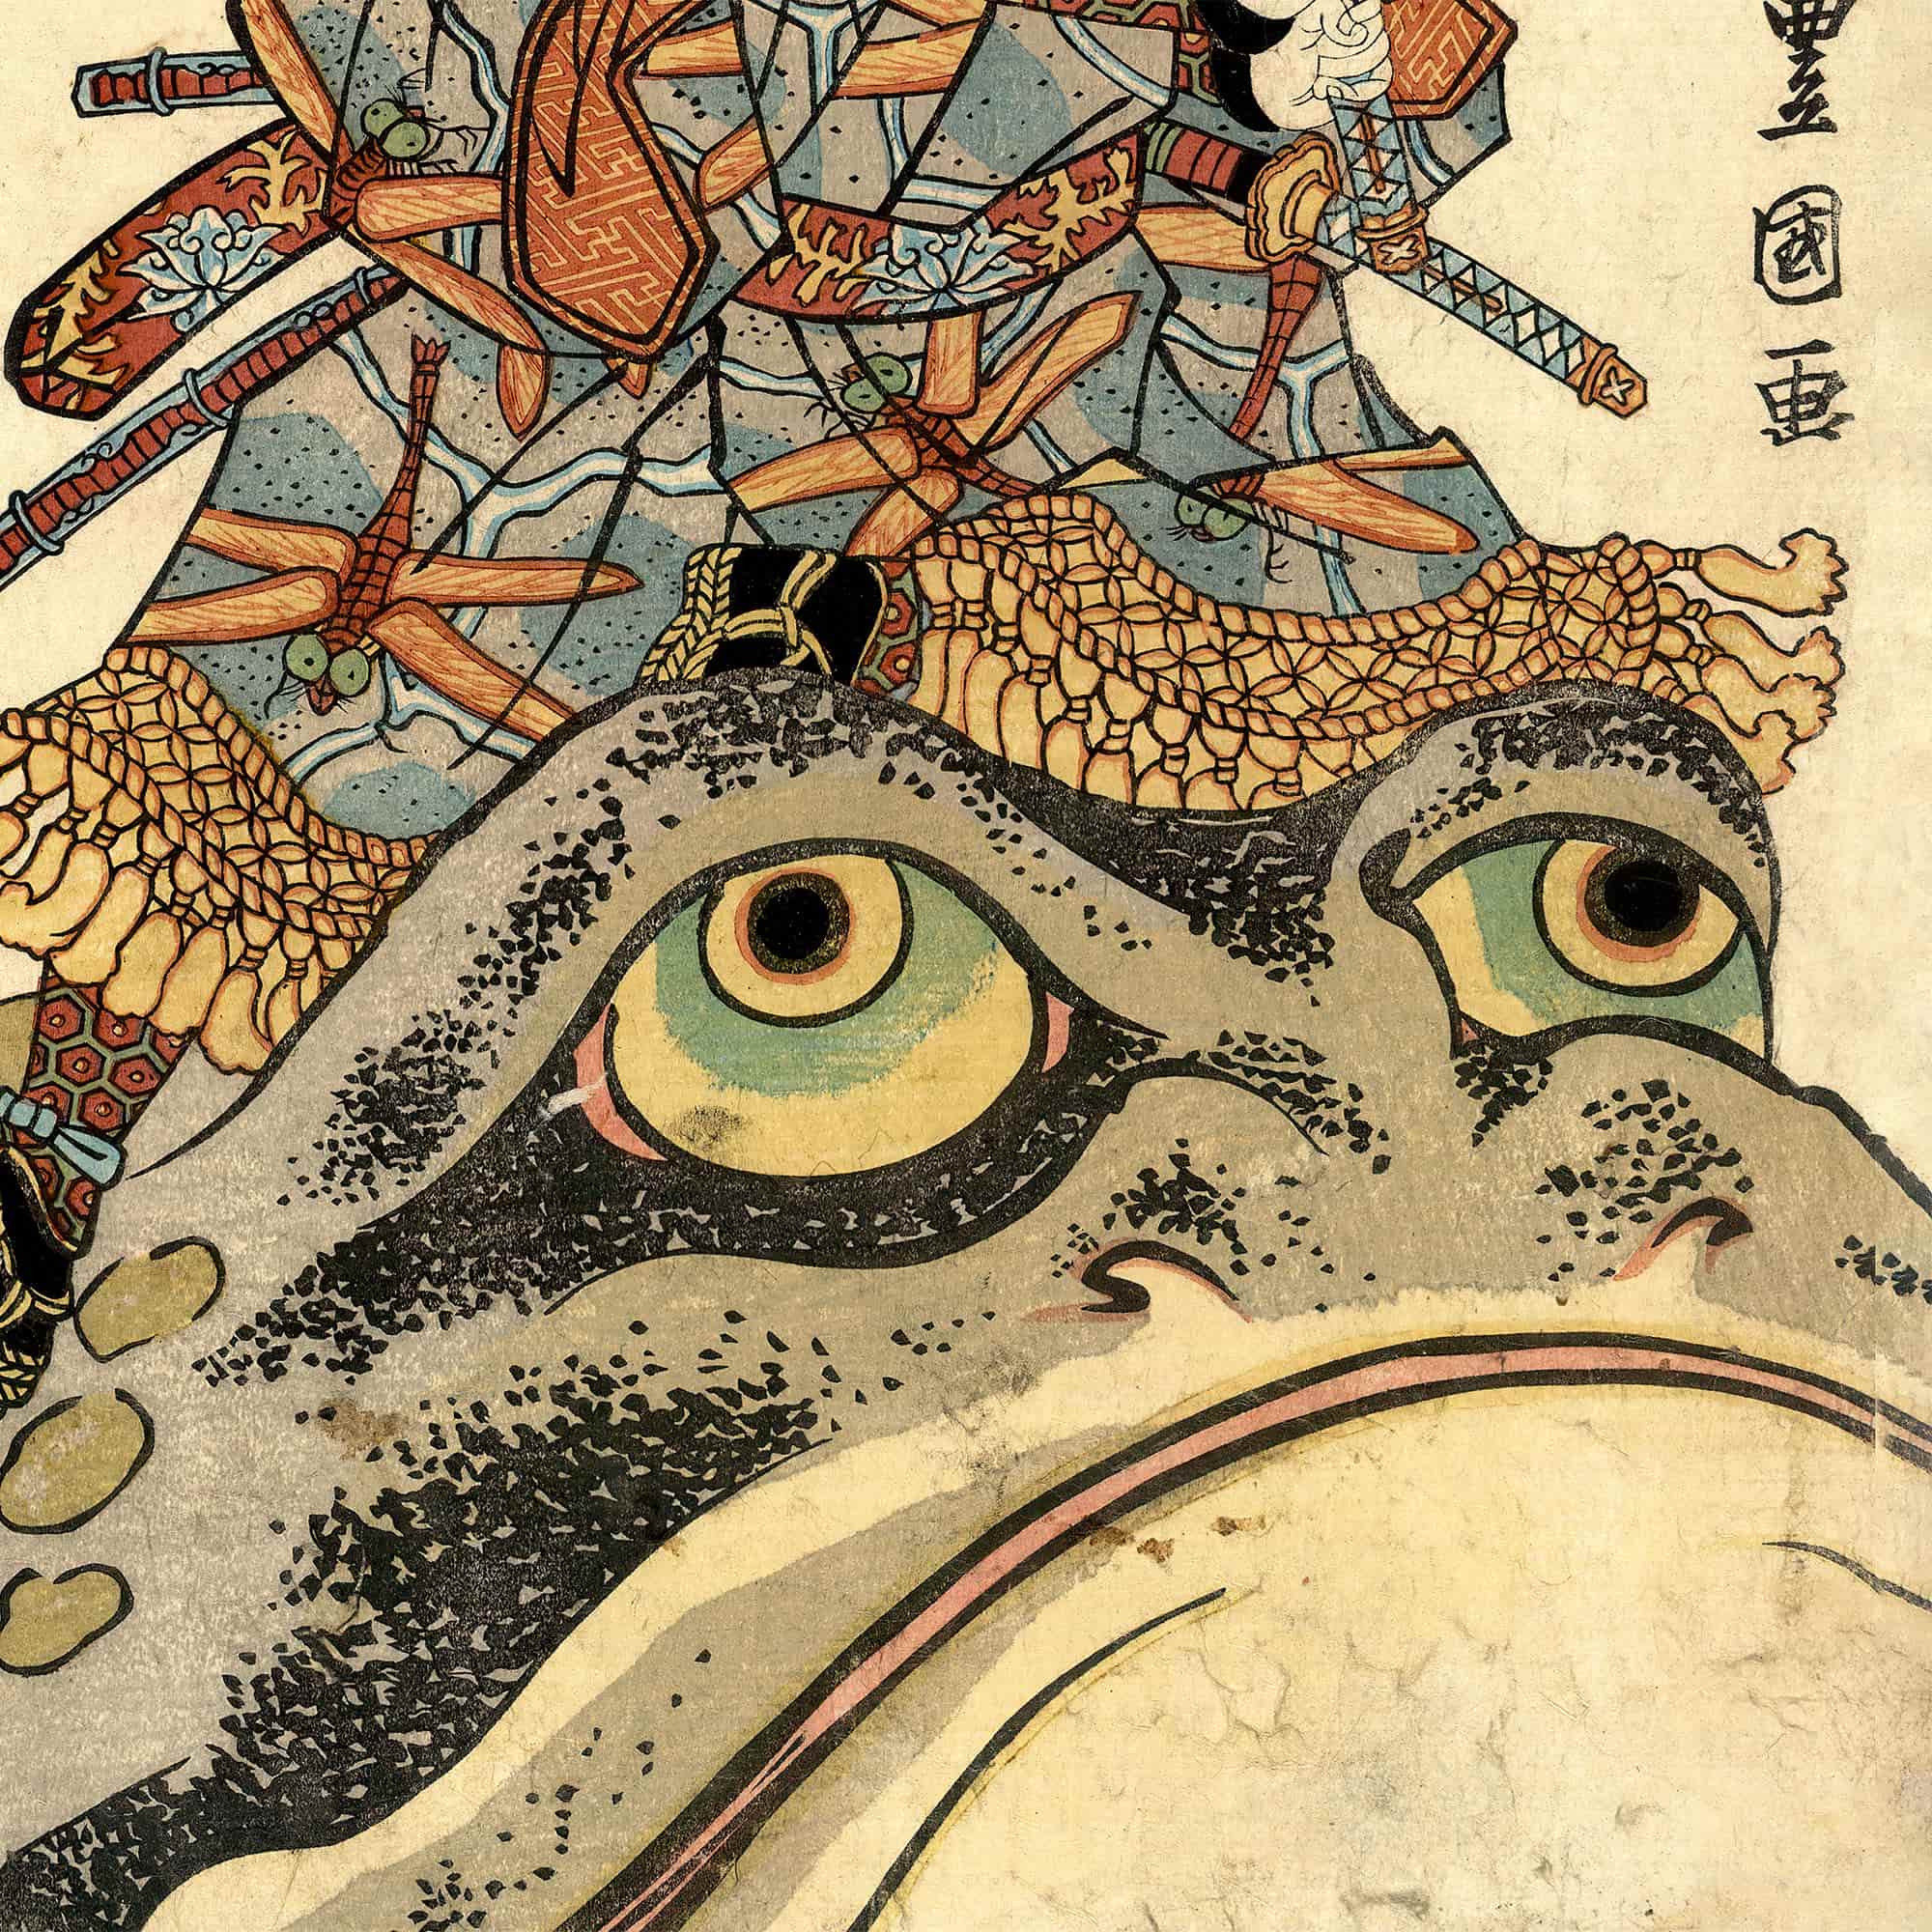 Framed Japanese Jiraiya Jiraya Giant Frog Toad Ninja Samurai Ukiyo-e Art Print - Sacred Surreal